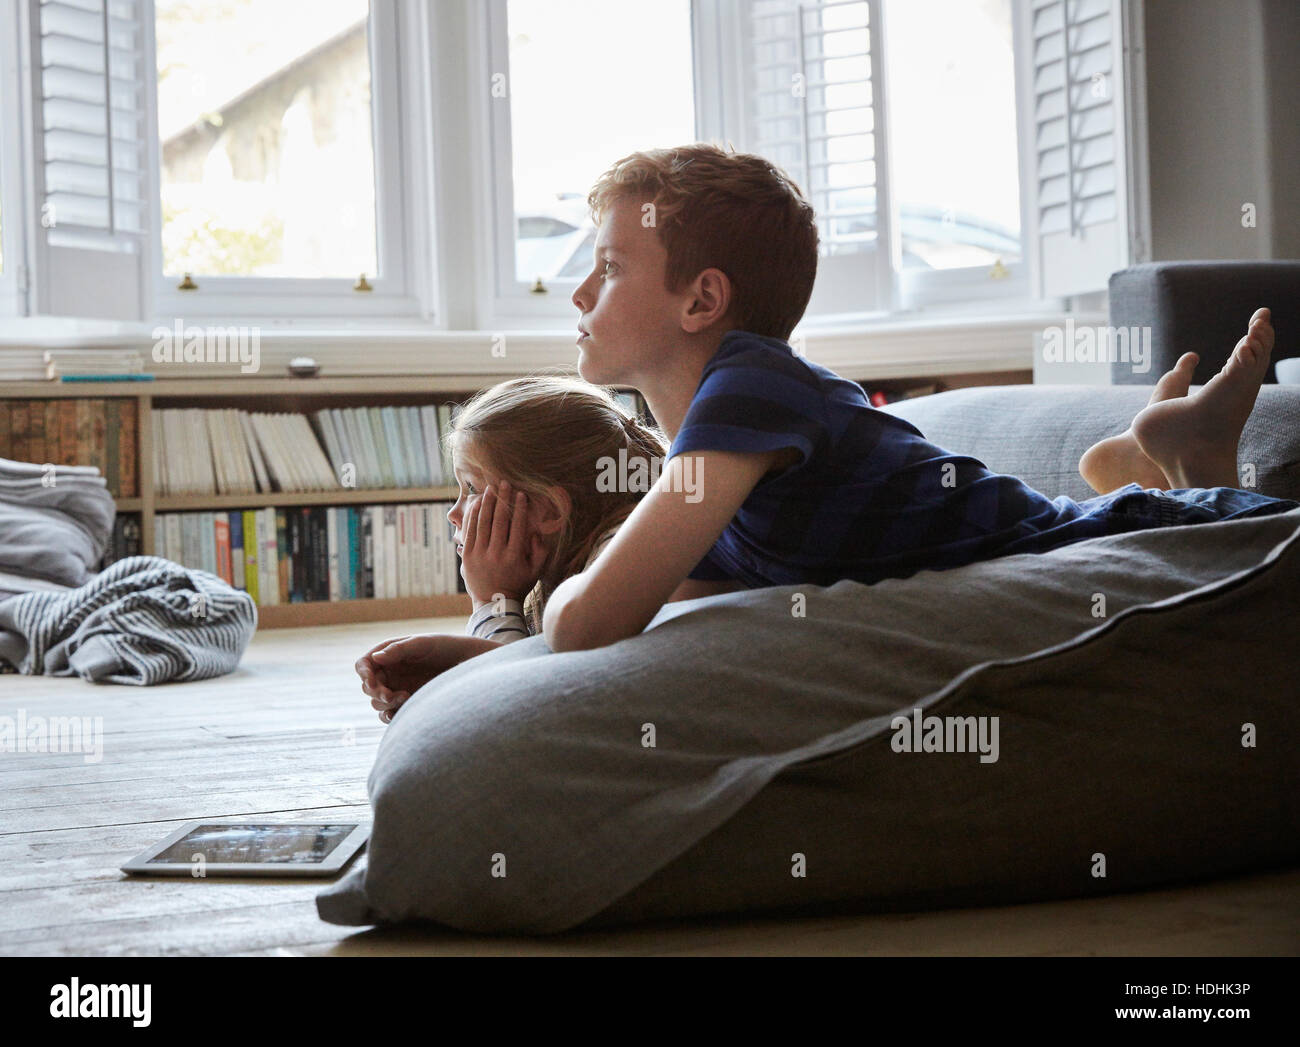 Une maison de famille. Deux enfants se trouvant sur le plancher, regarder la télévision. Banque D'Images